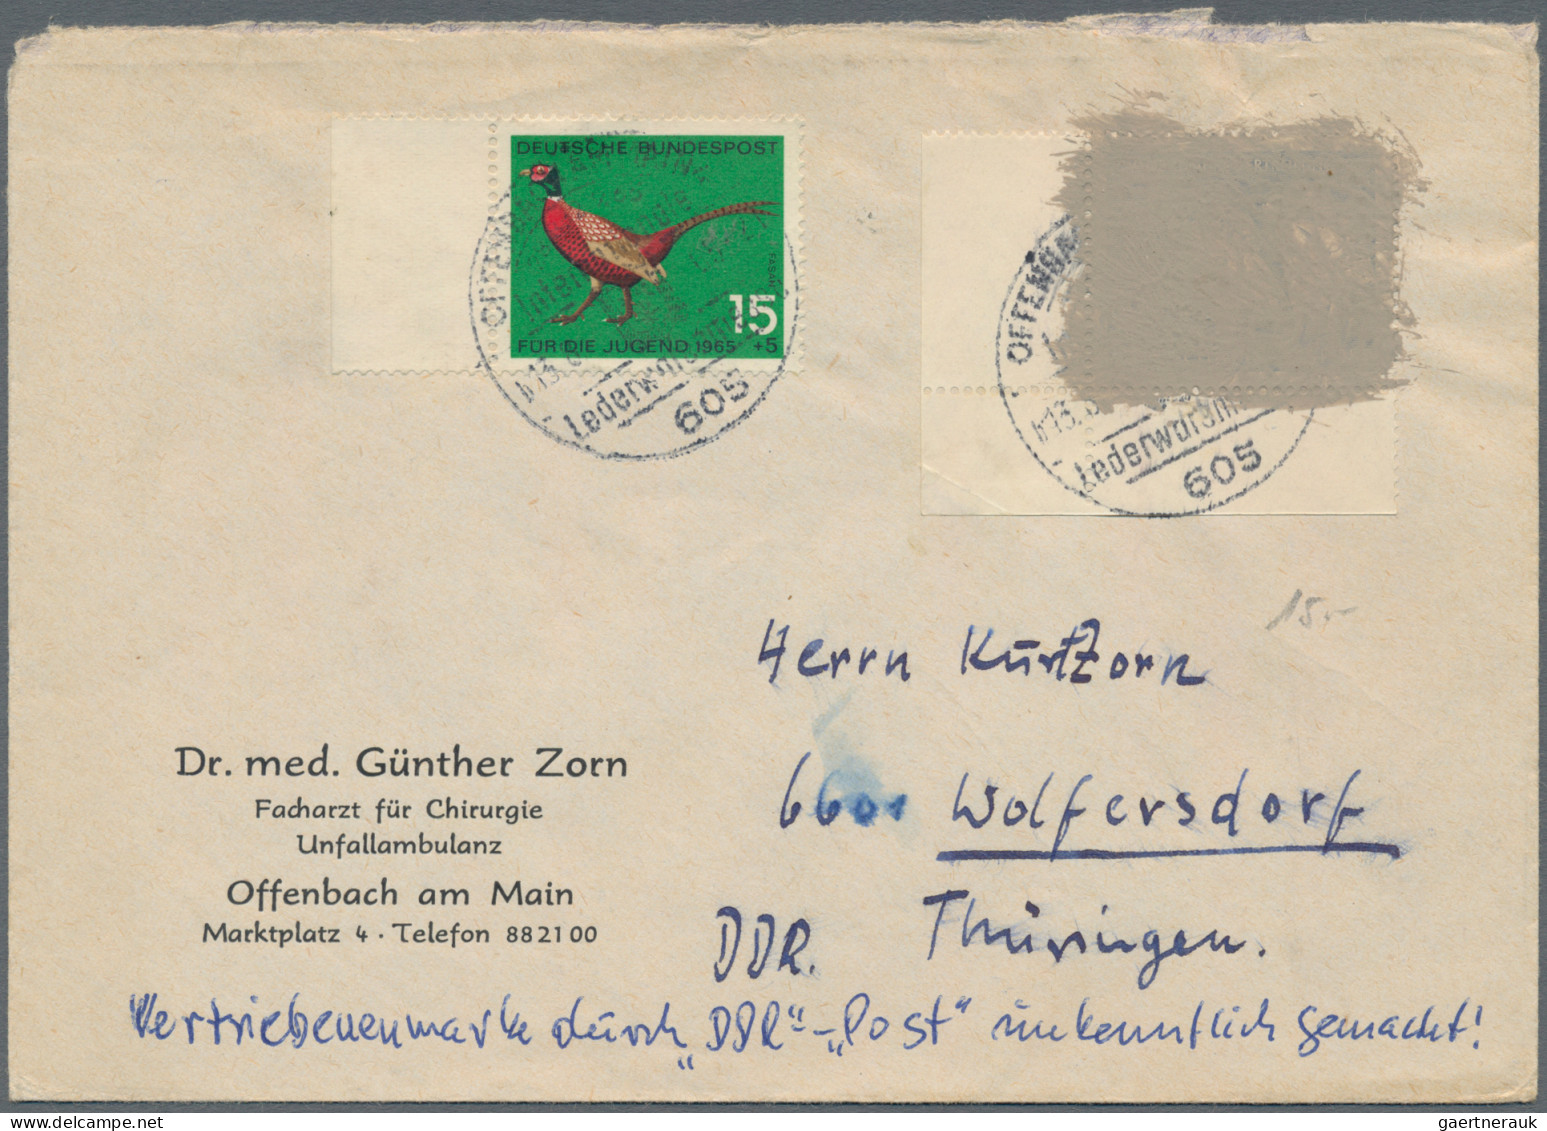 Bundesrepublik und Berlin - Postkrieg: POSTKRIEG, ab Kriegsgefangenen-Marke 1952